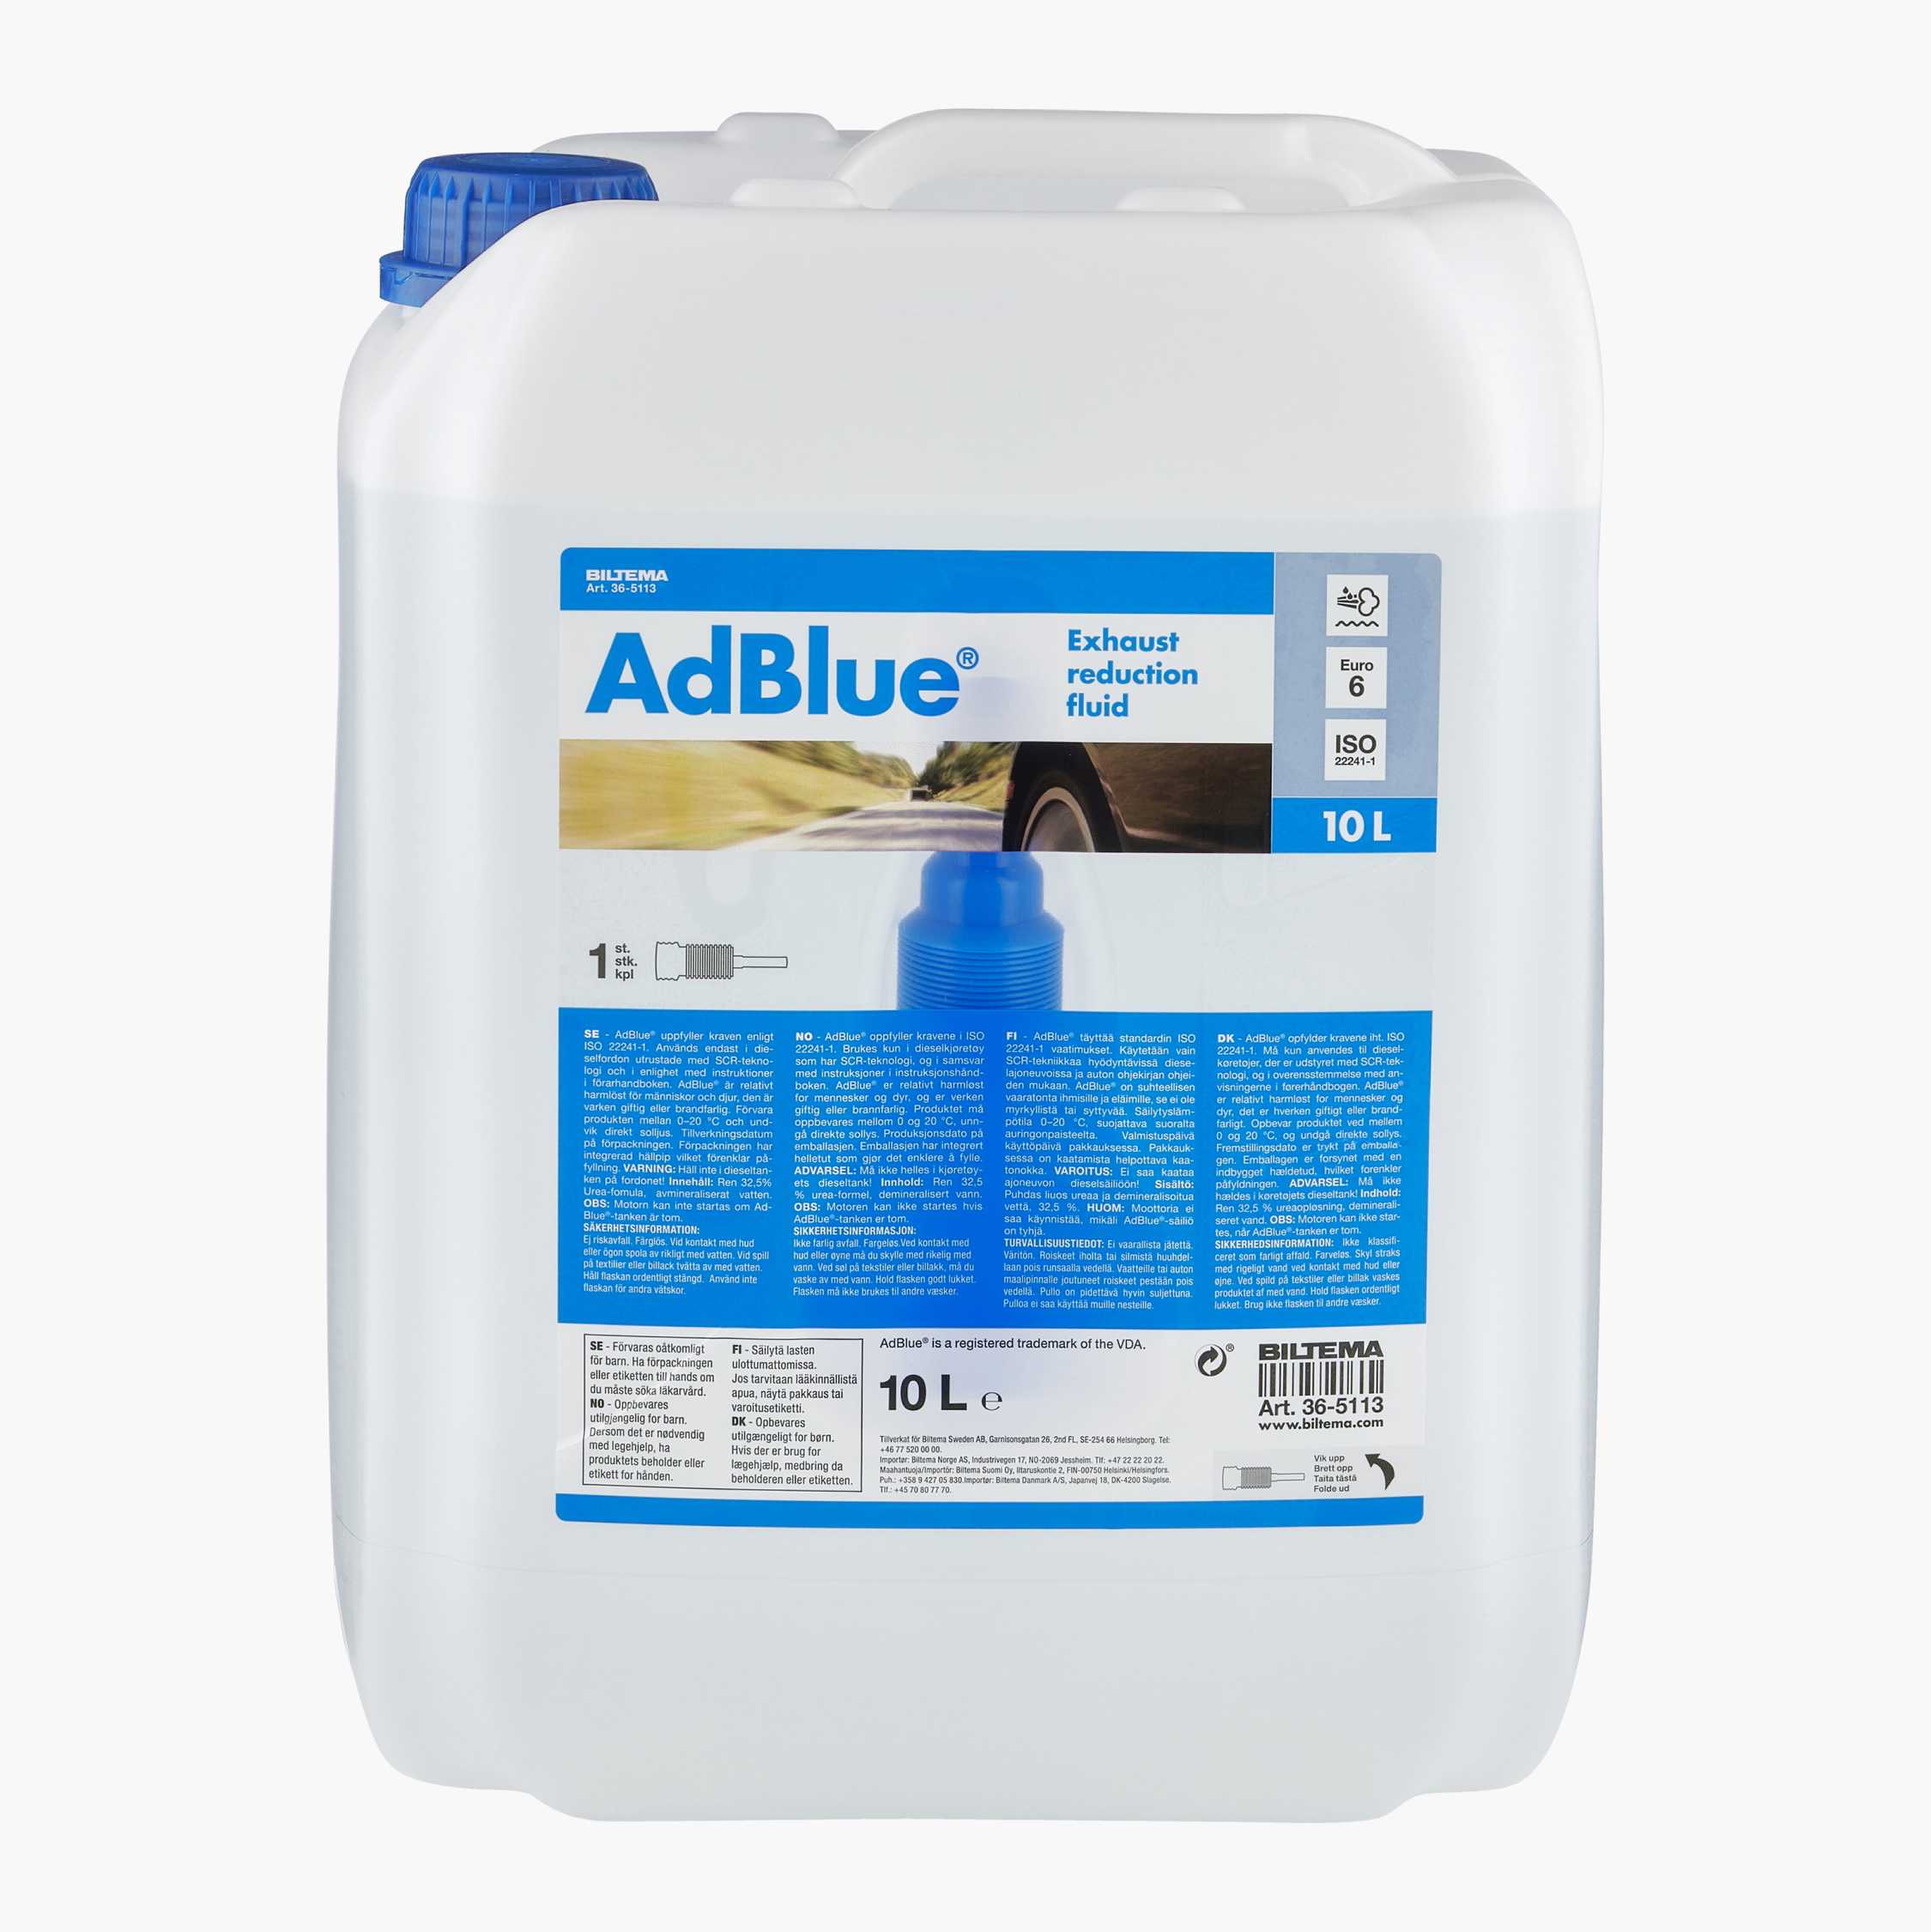 Bidon de 10L d'AdBlue - dufetel-energie